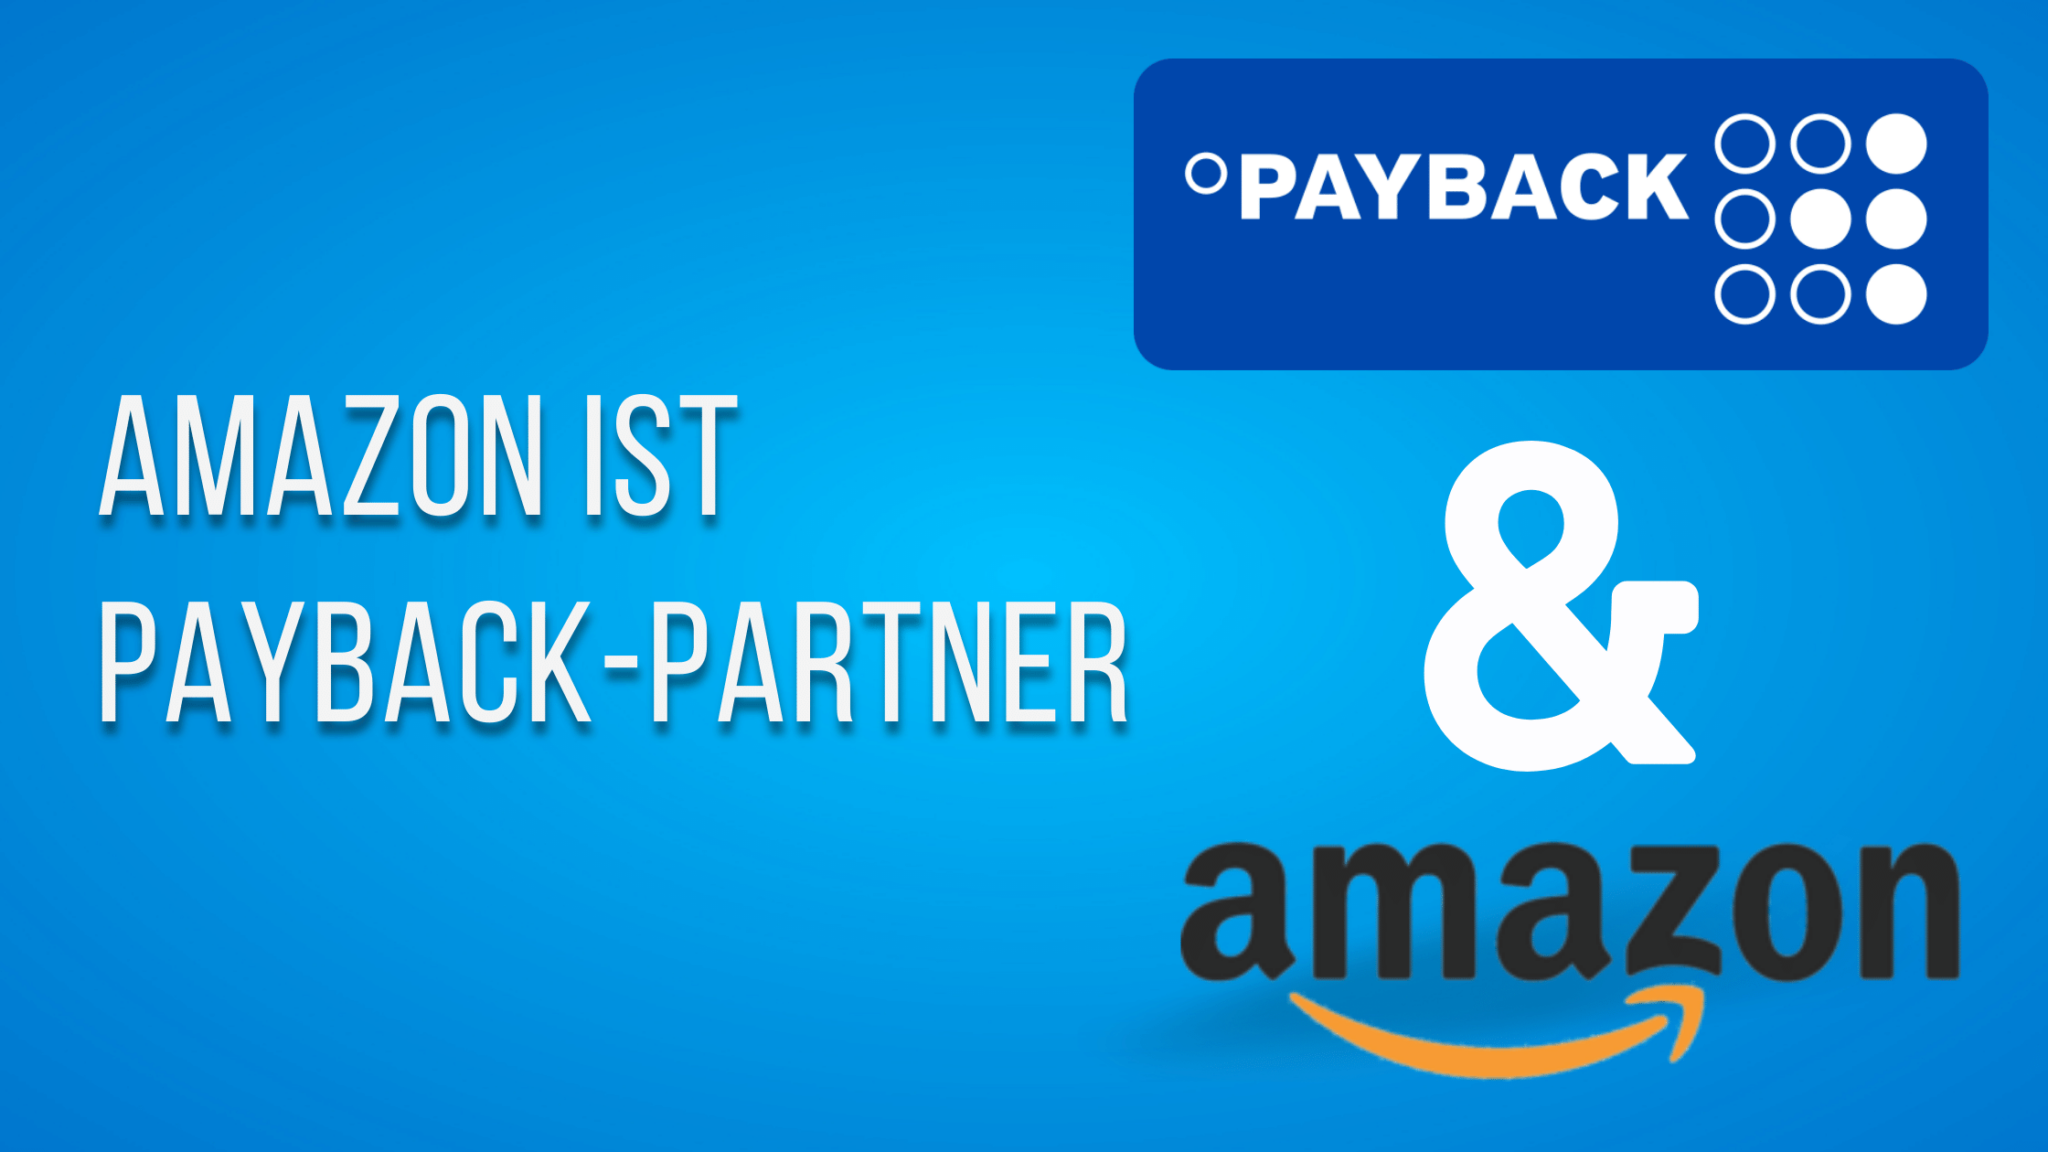 Endlich wieder: Amazon ist Payback-Partner